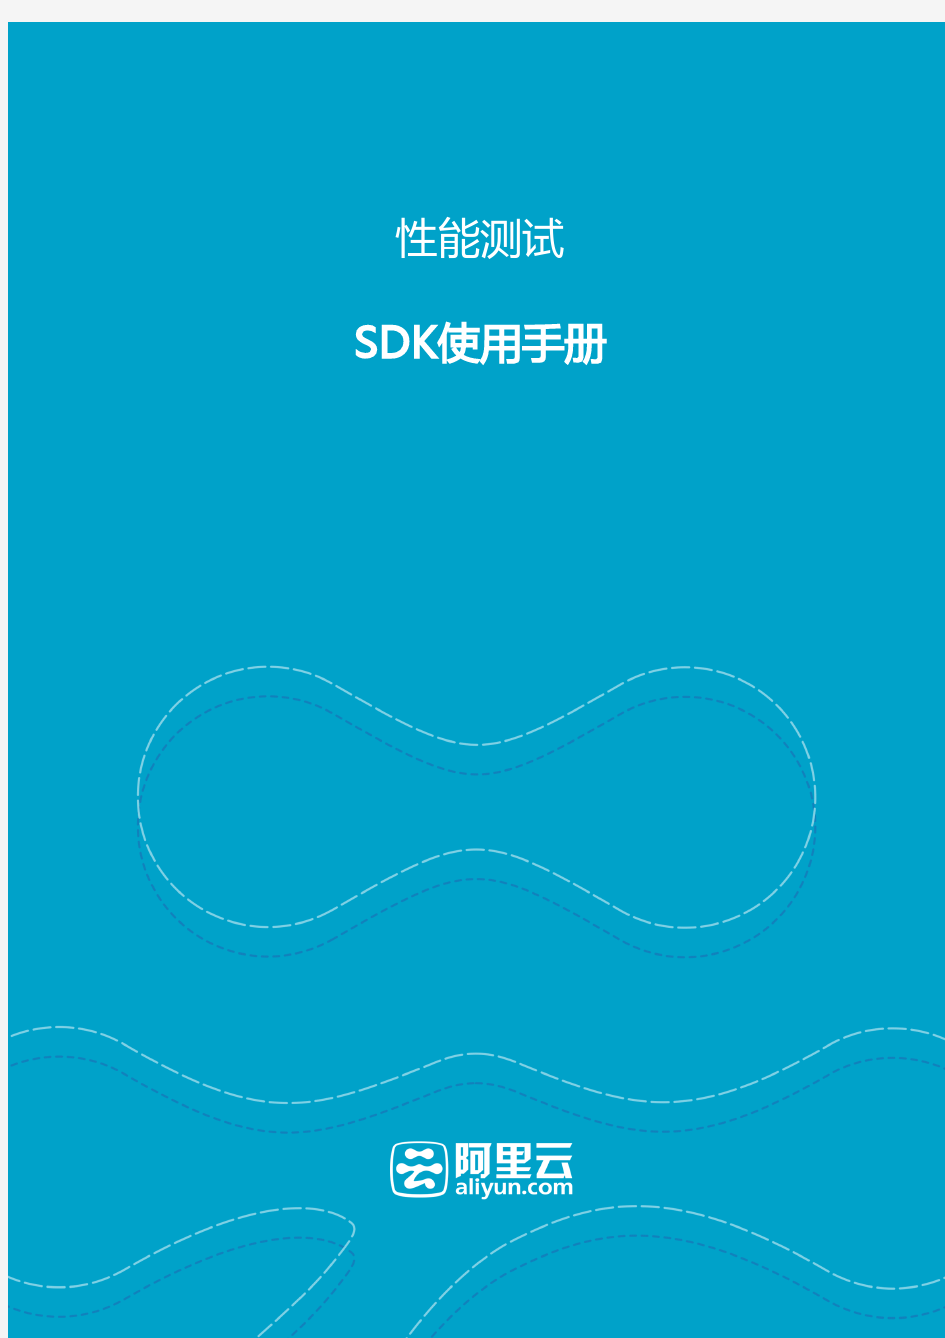 阿里云-性能测试服务SDK手册